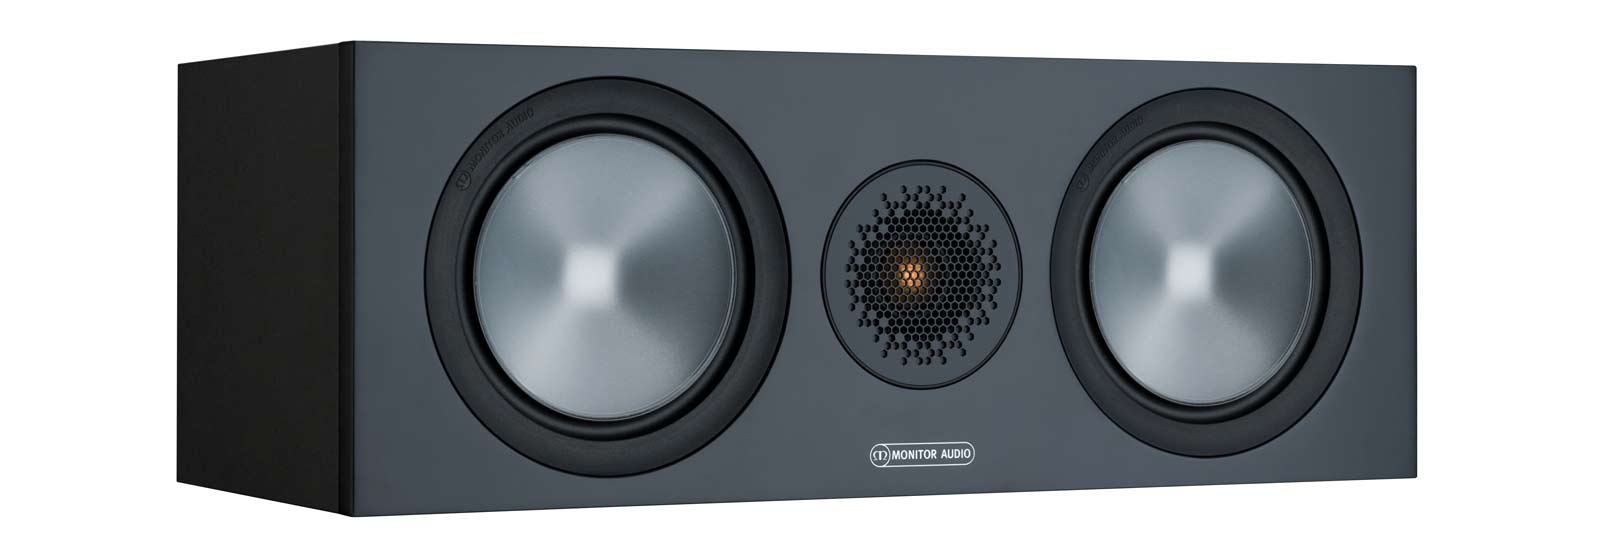 Monitor-Audio-C150-centre-speaker